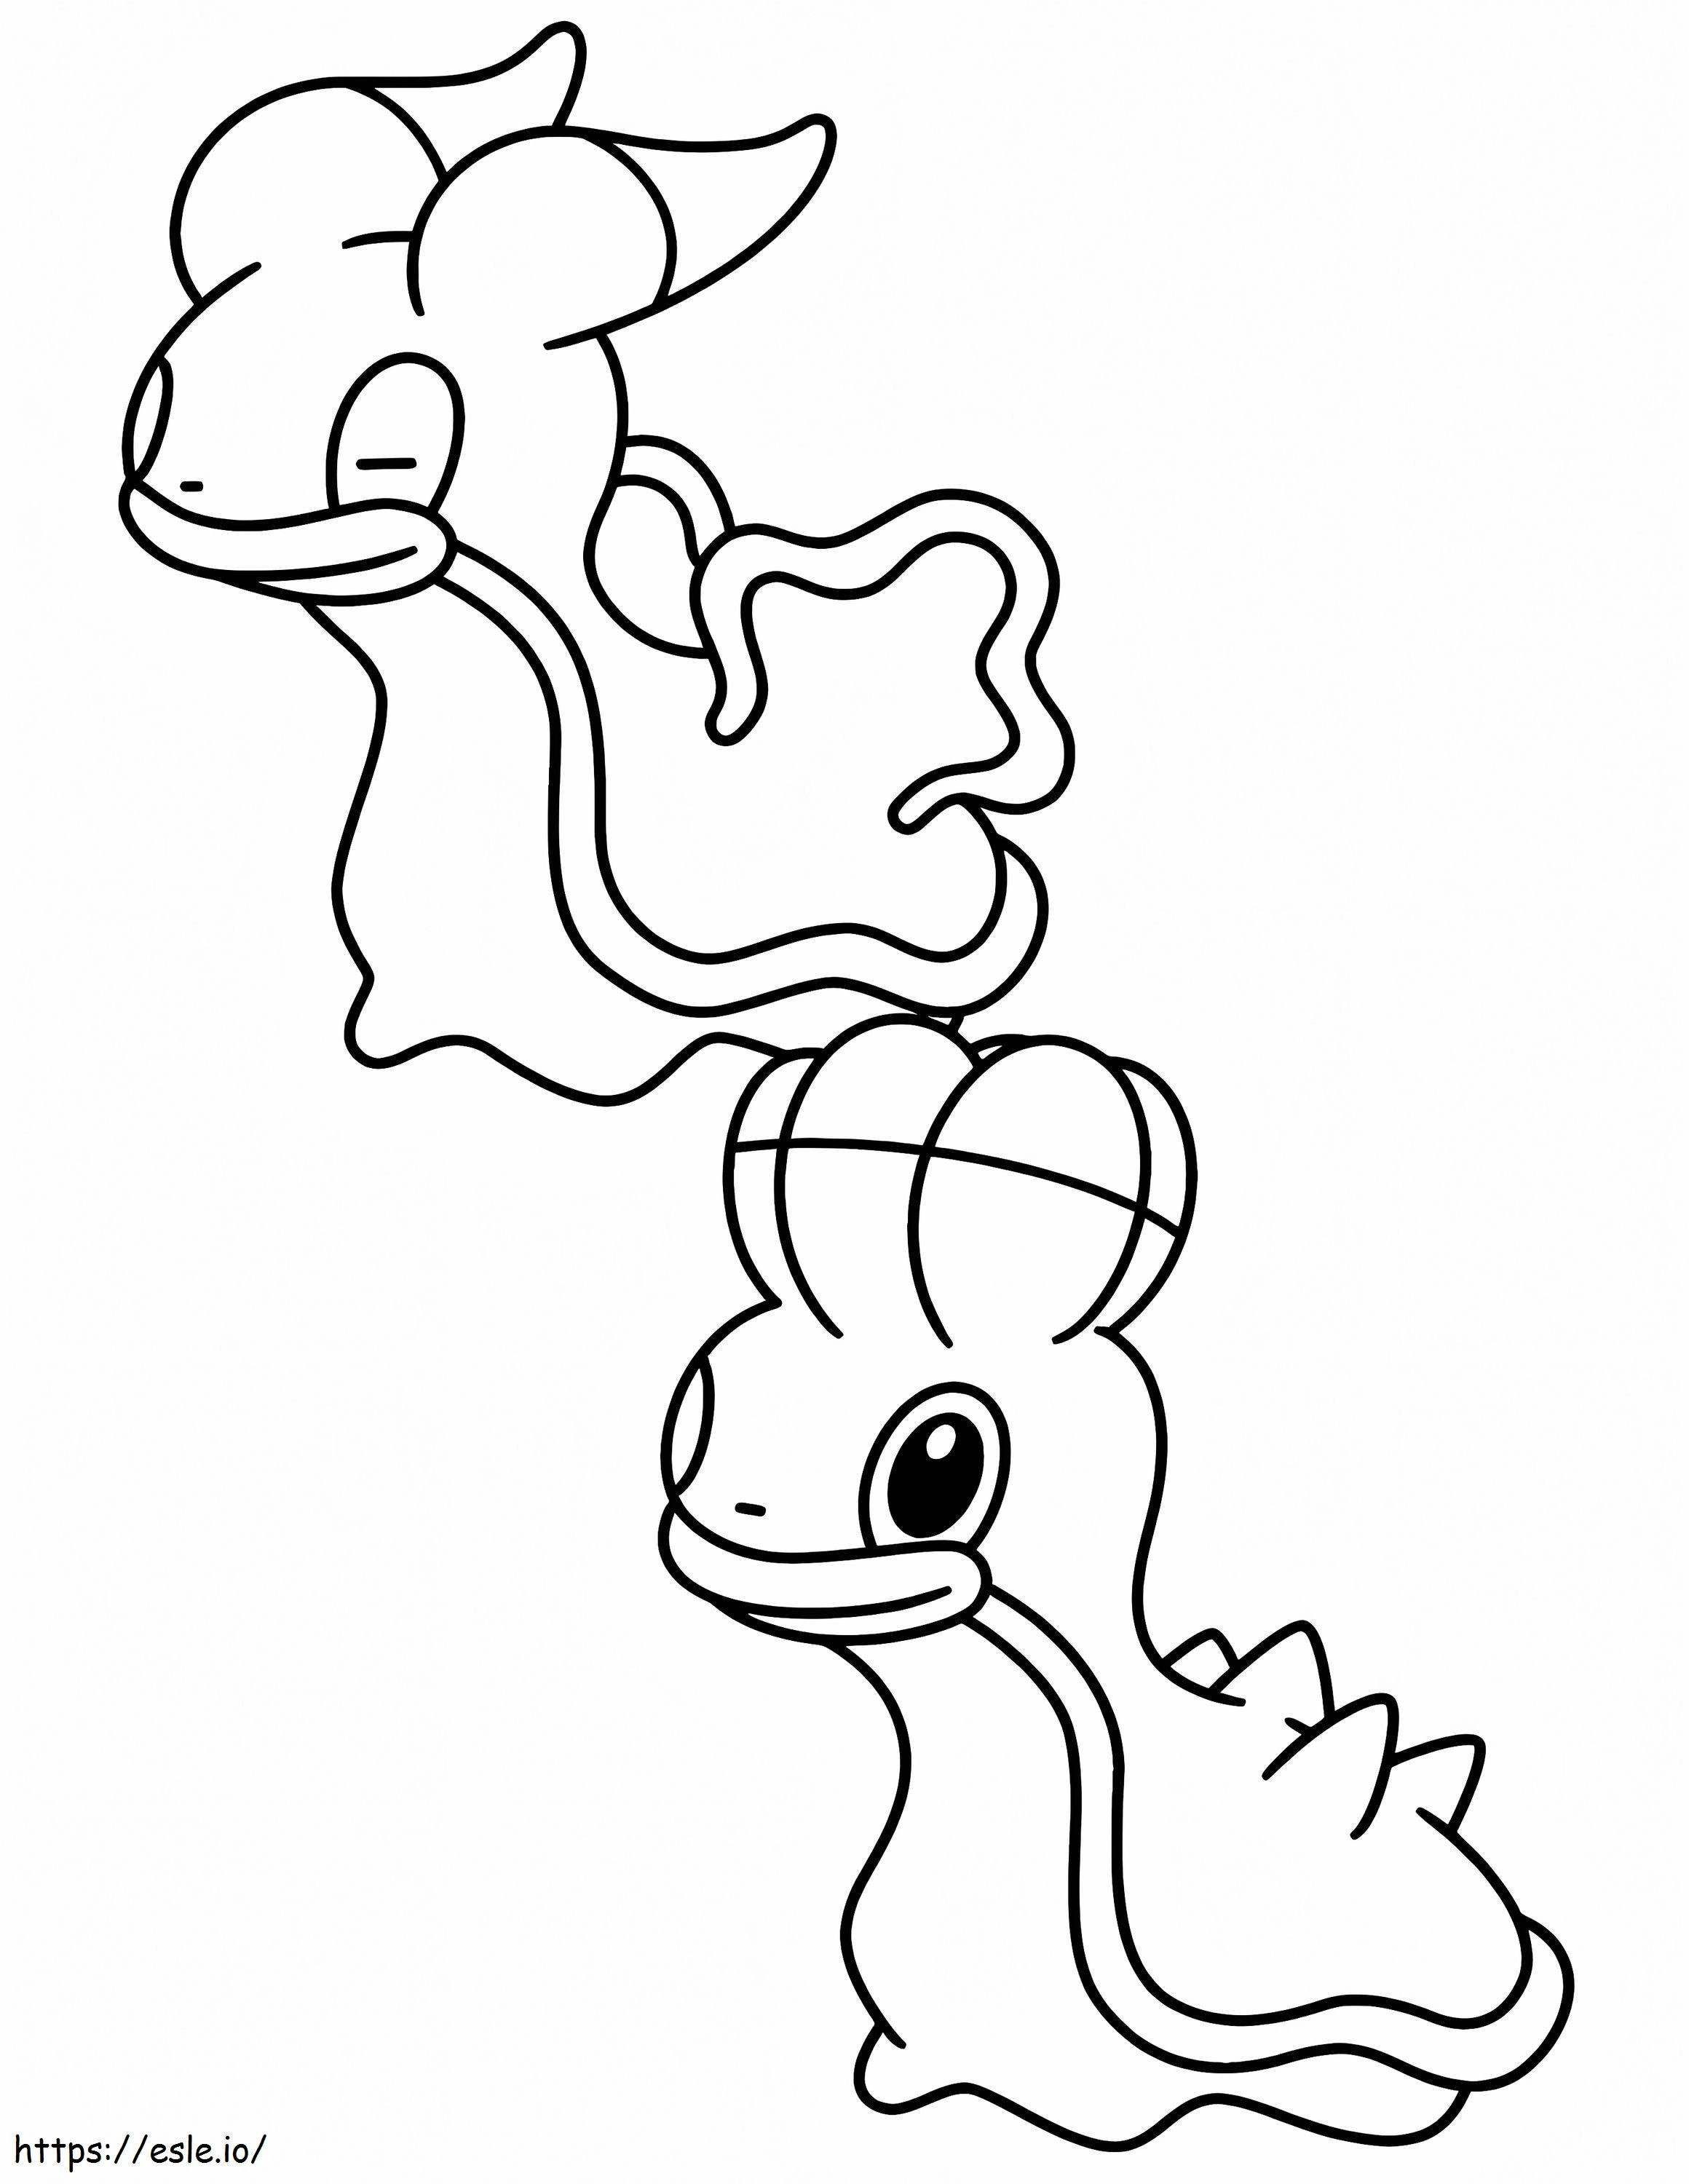 Coloriage Shellos Pokemon 2 à imprimer dessin